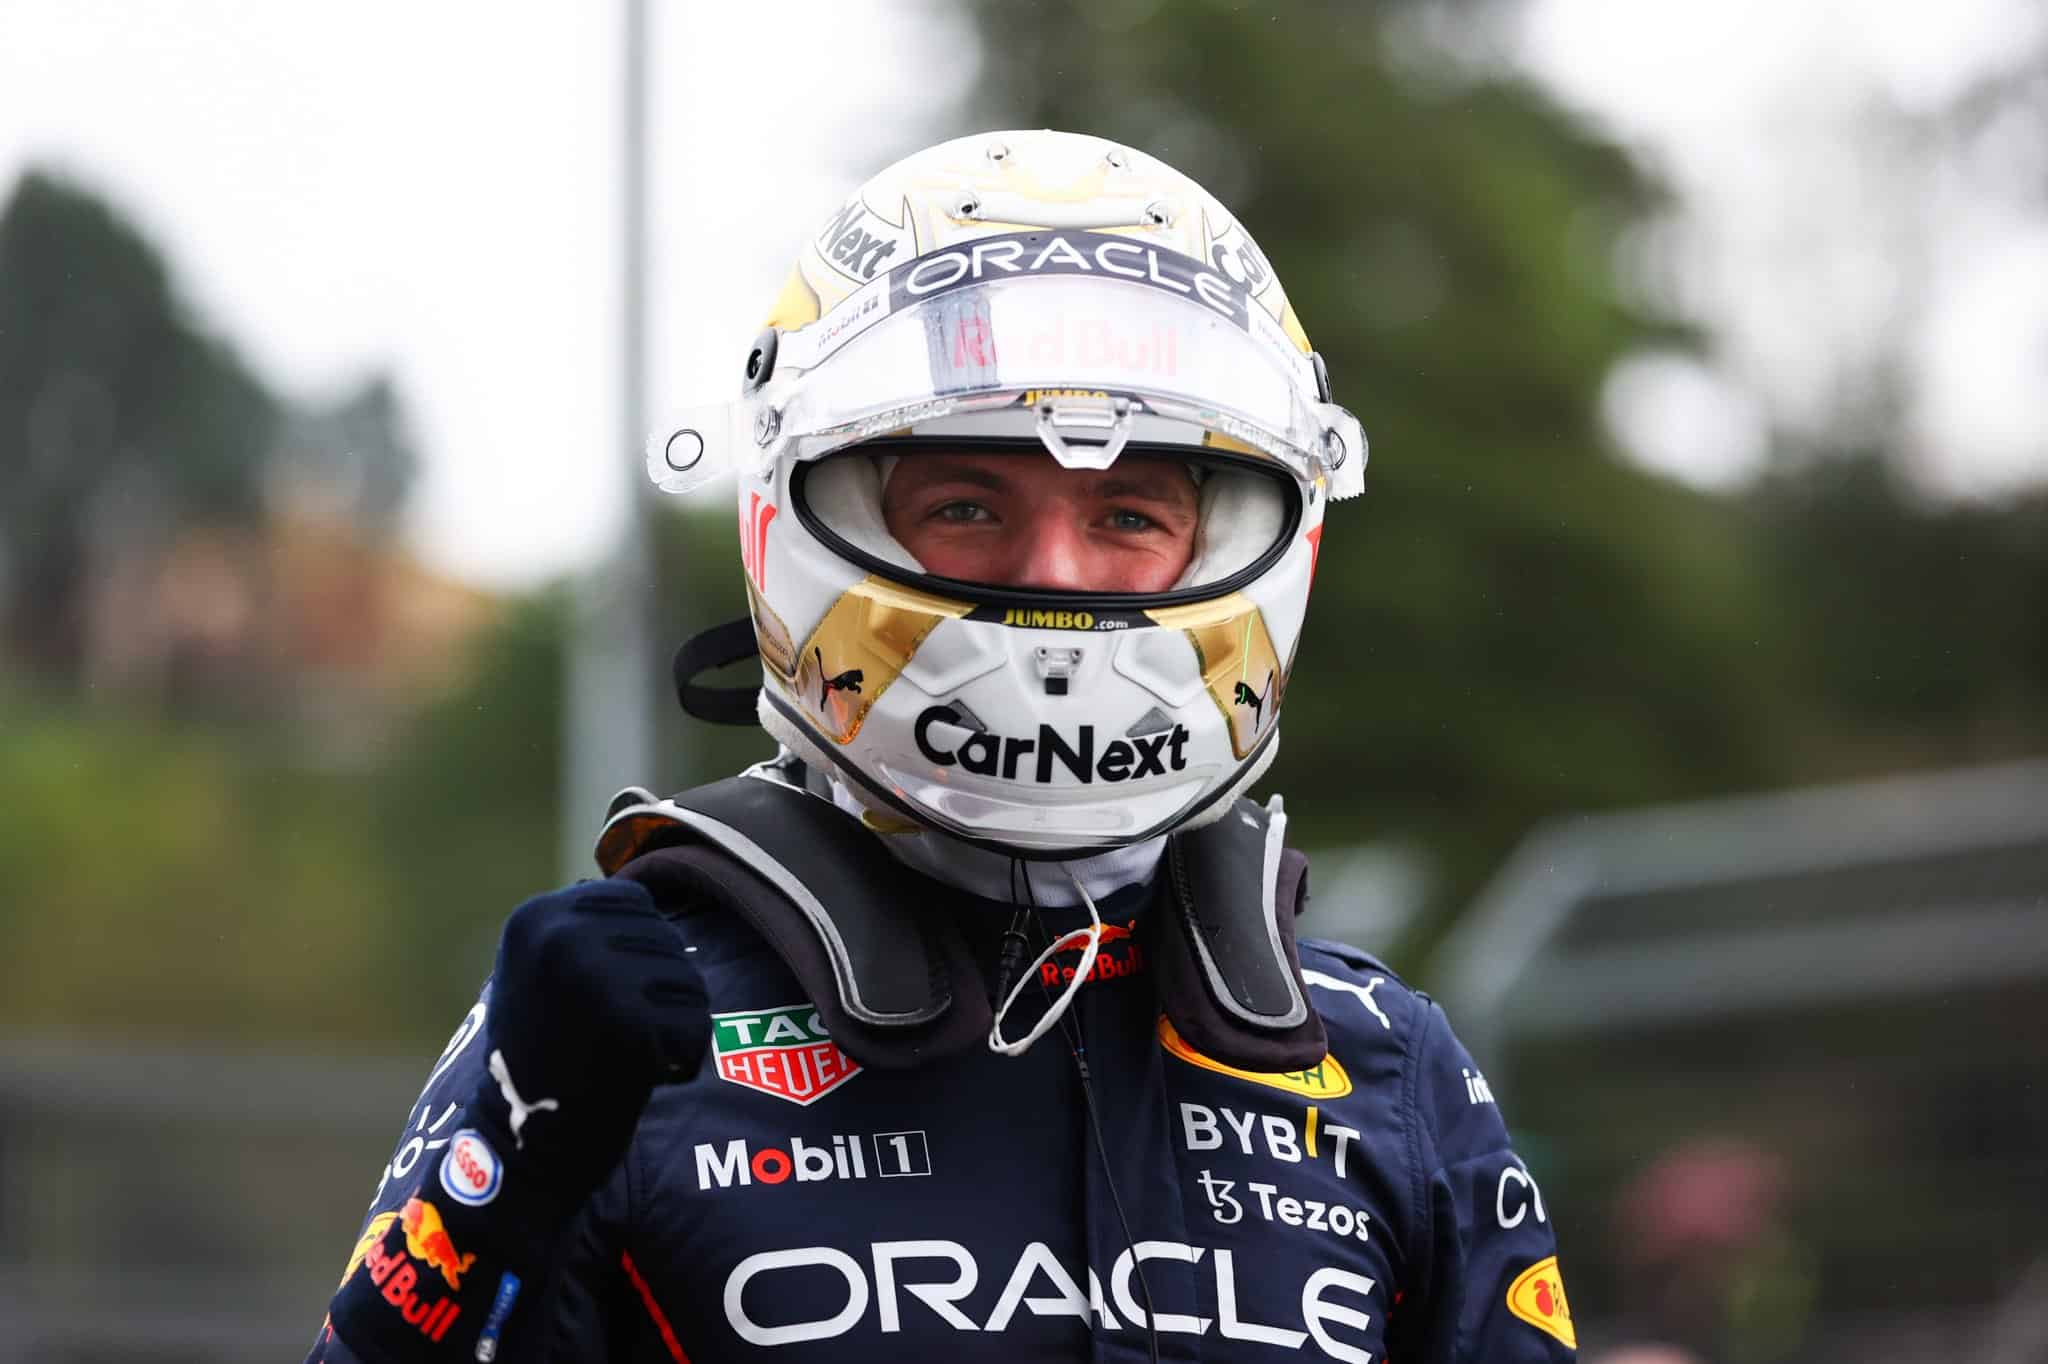 Max Verstappen saldrá primero en la prueba sprint que ordenará la formación de salida del Gran Premio de la Emilia Romaña